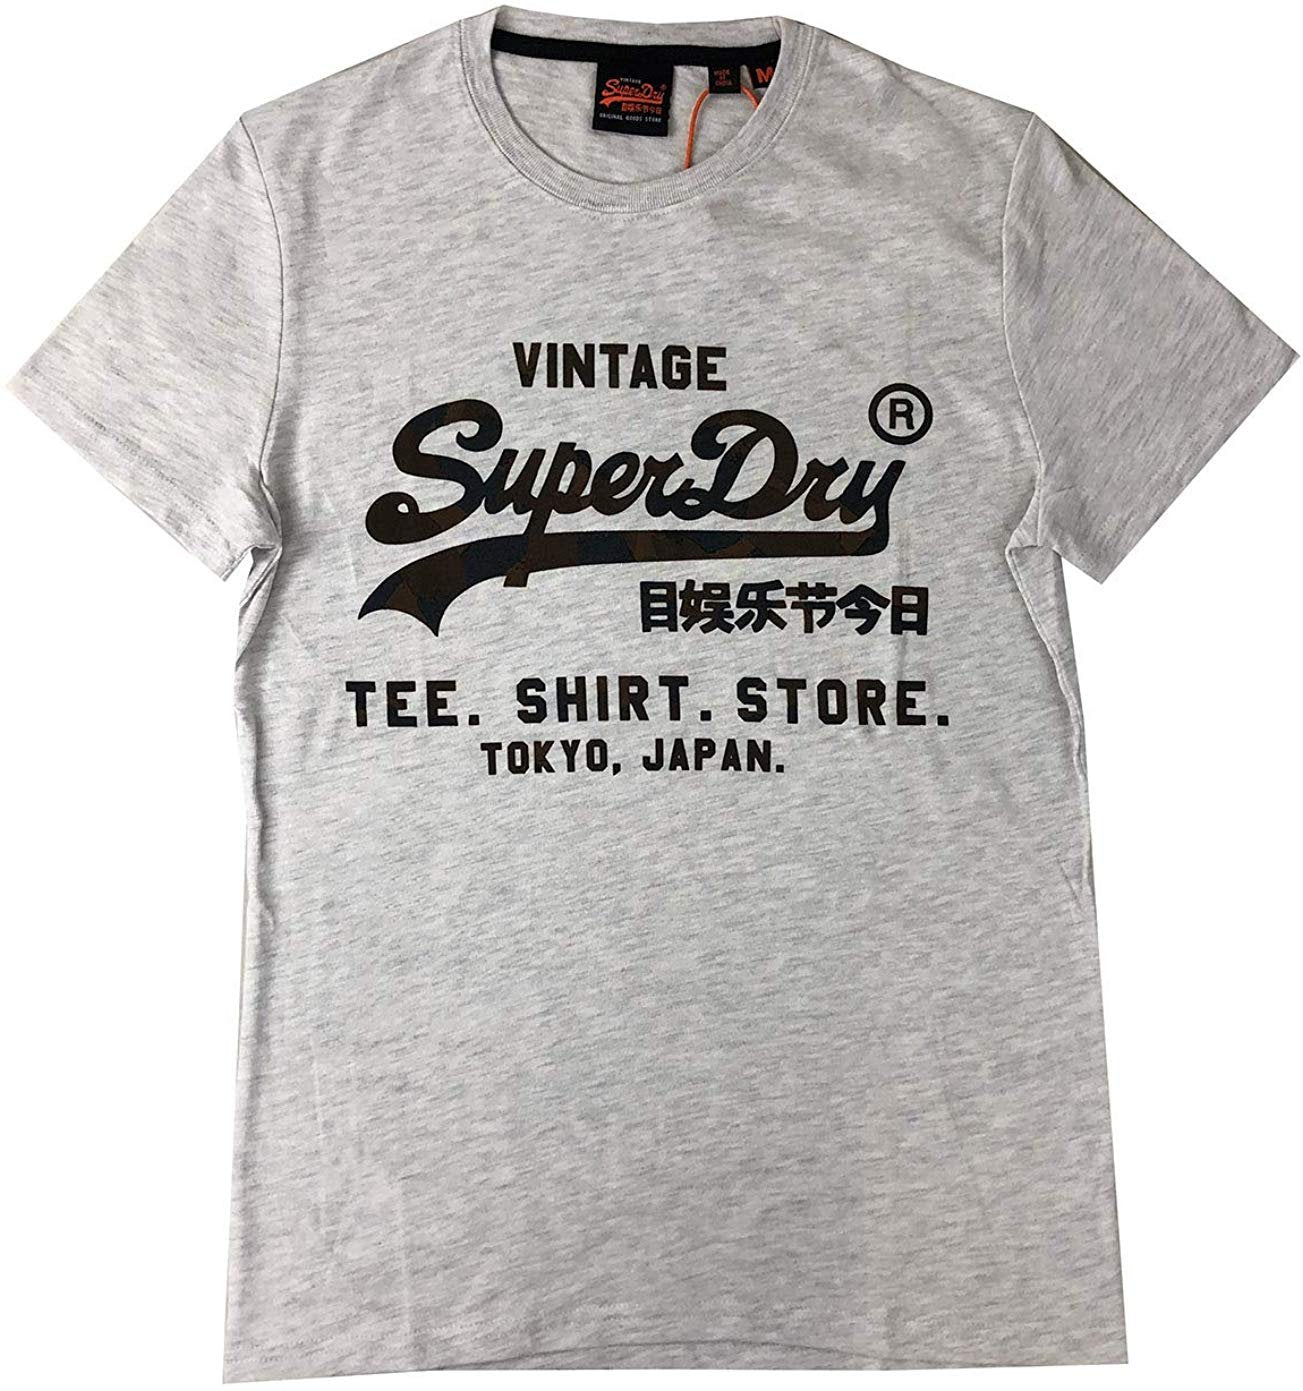 Vintage Logo Infill Shirt Store Infill T-Shirt